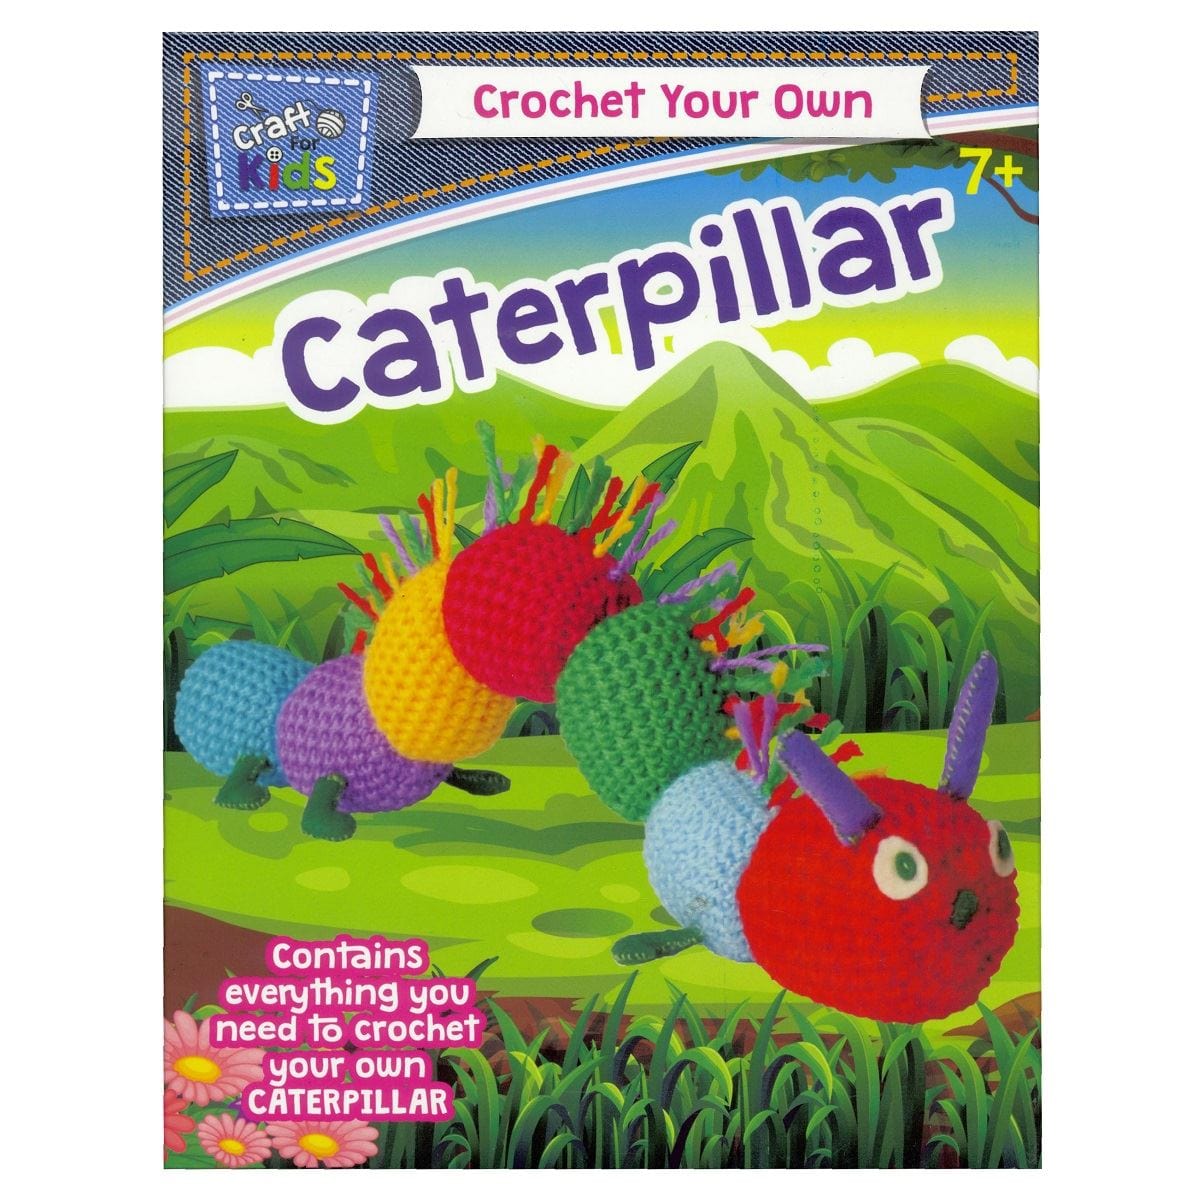 Crochet Your Own Caterpillar